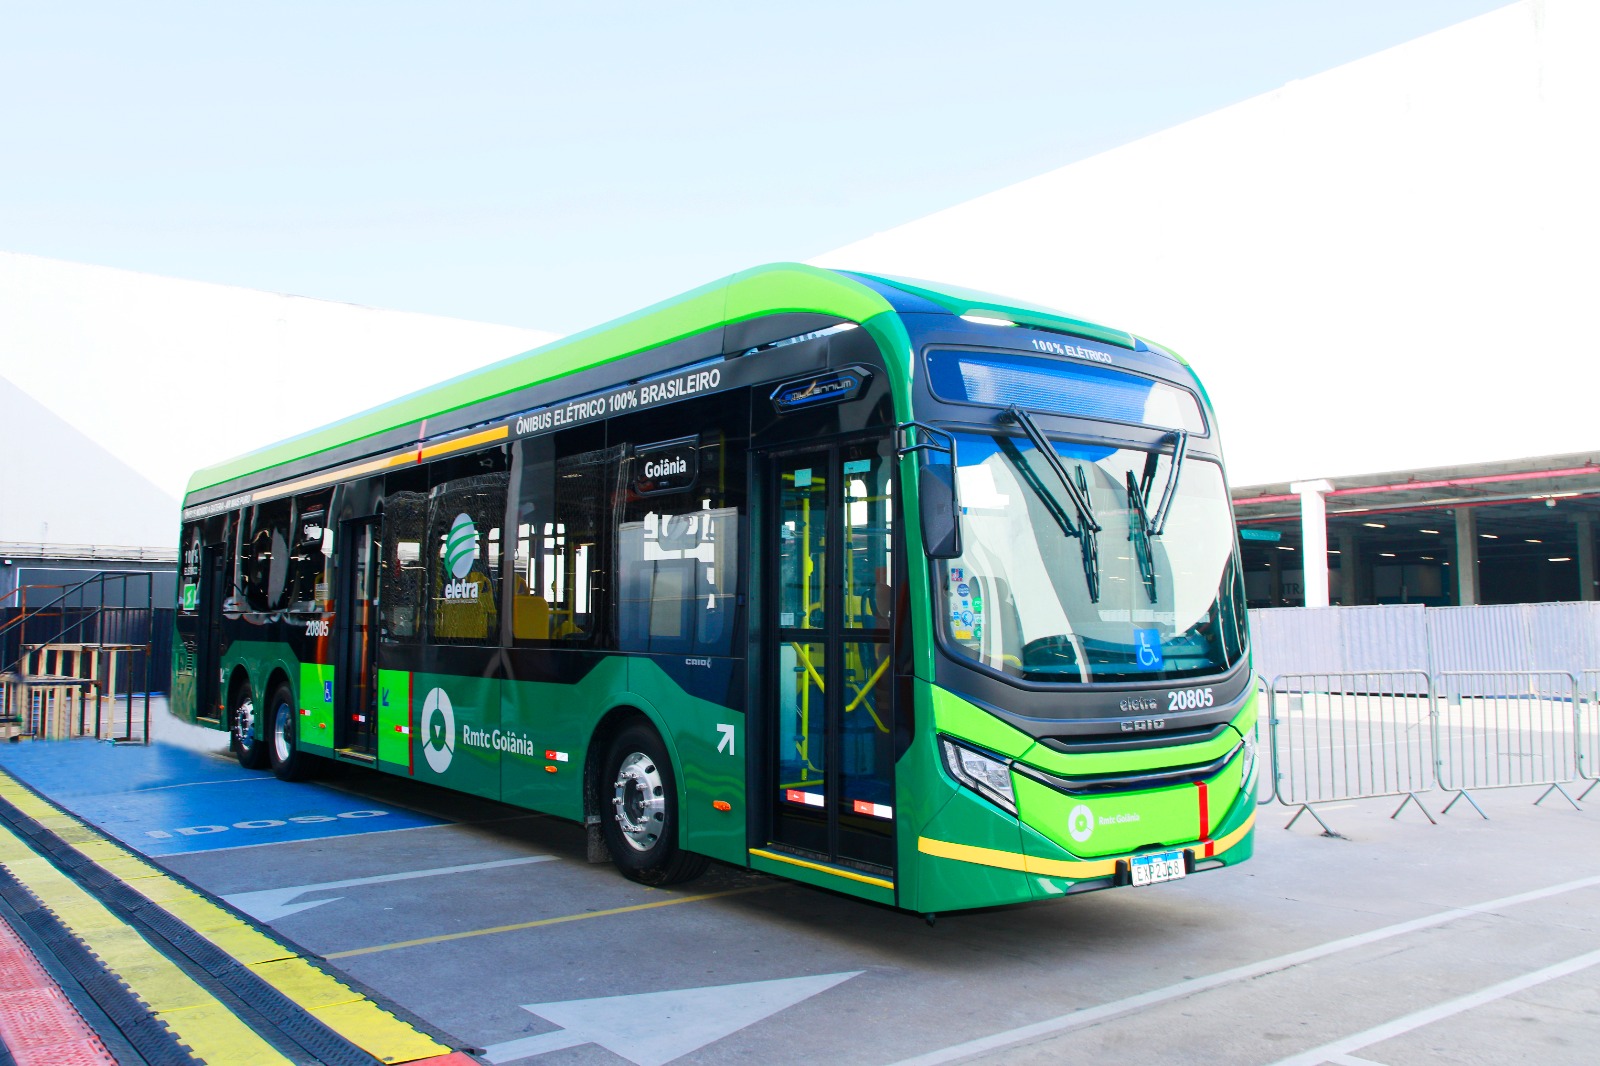 Prefeitura de Goiânia investiu mais de R$ 246 milhões para manter congelamento da tarifa de ônibus a R$ 4,30